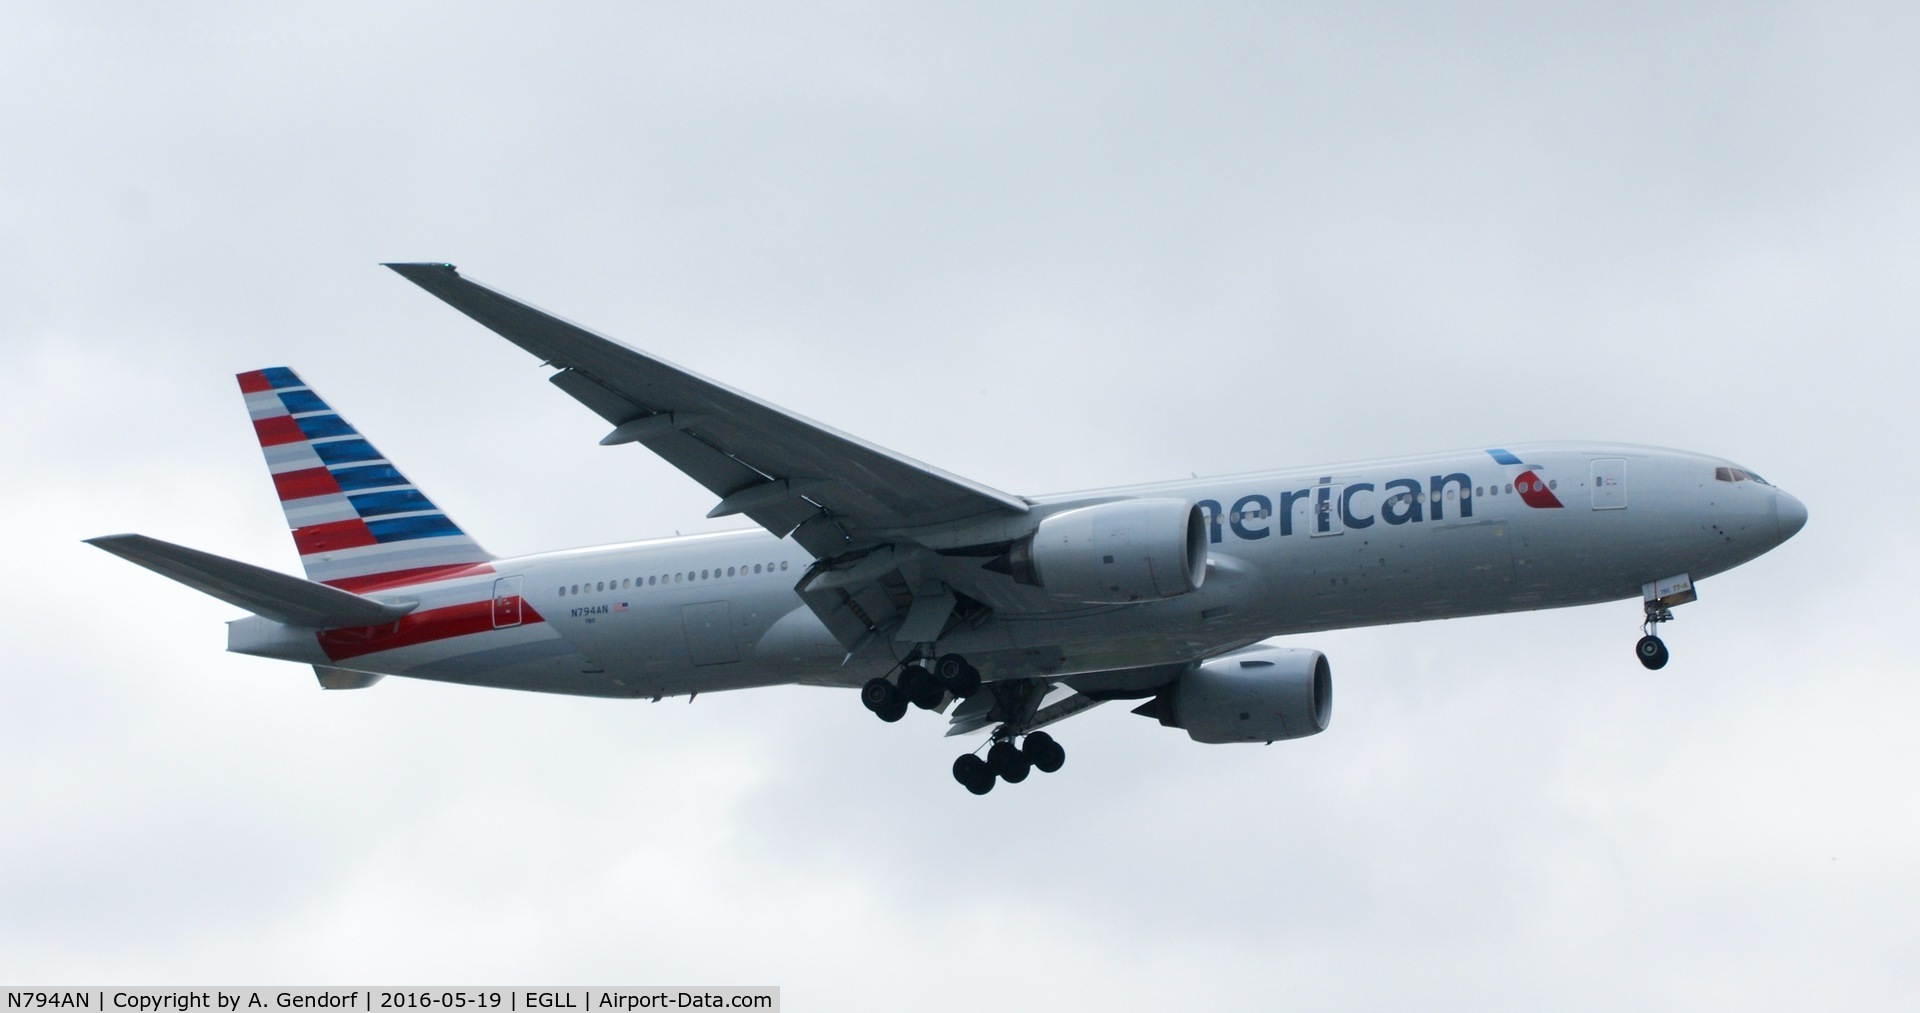 N794AN, 2000 Boeing 777-223 C/N 30256, American Airlines, seen here at London Heathrow(EGLL)